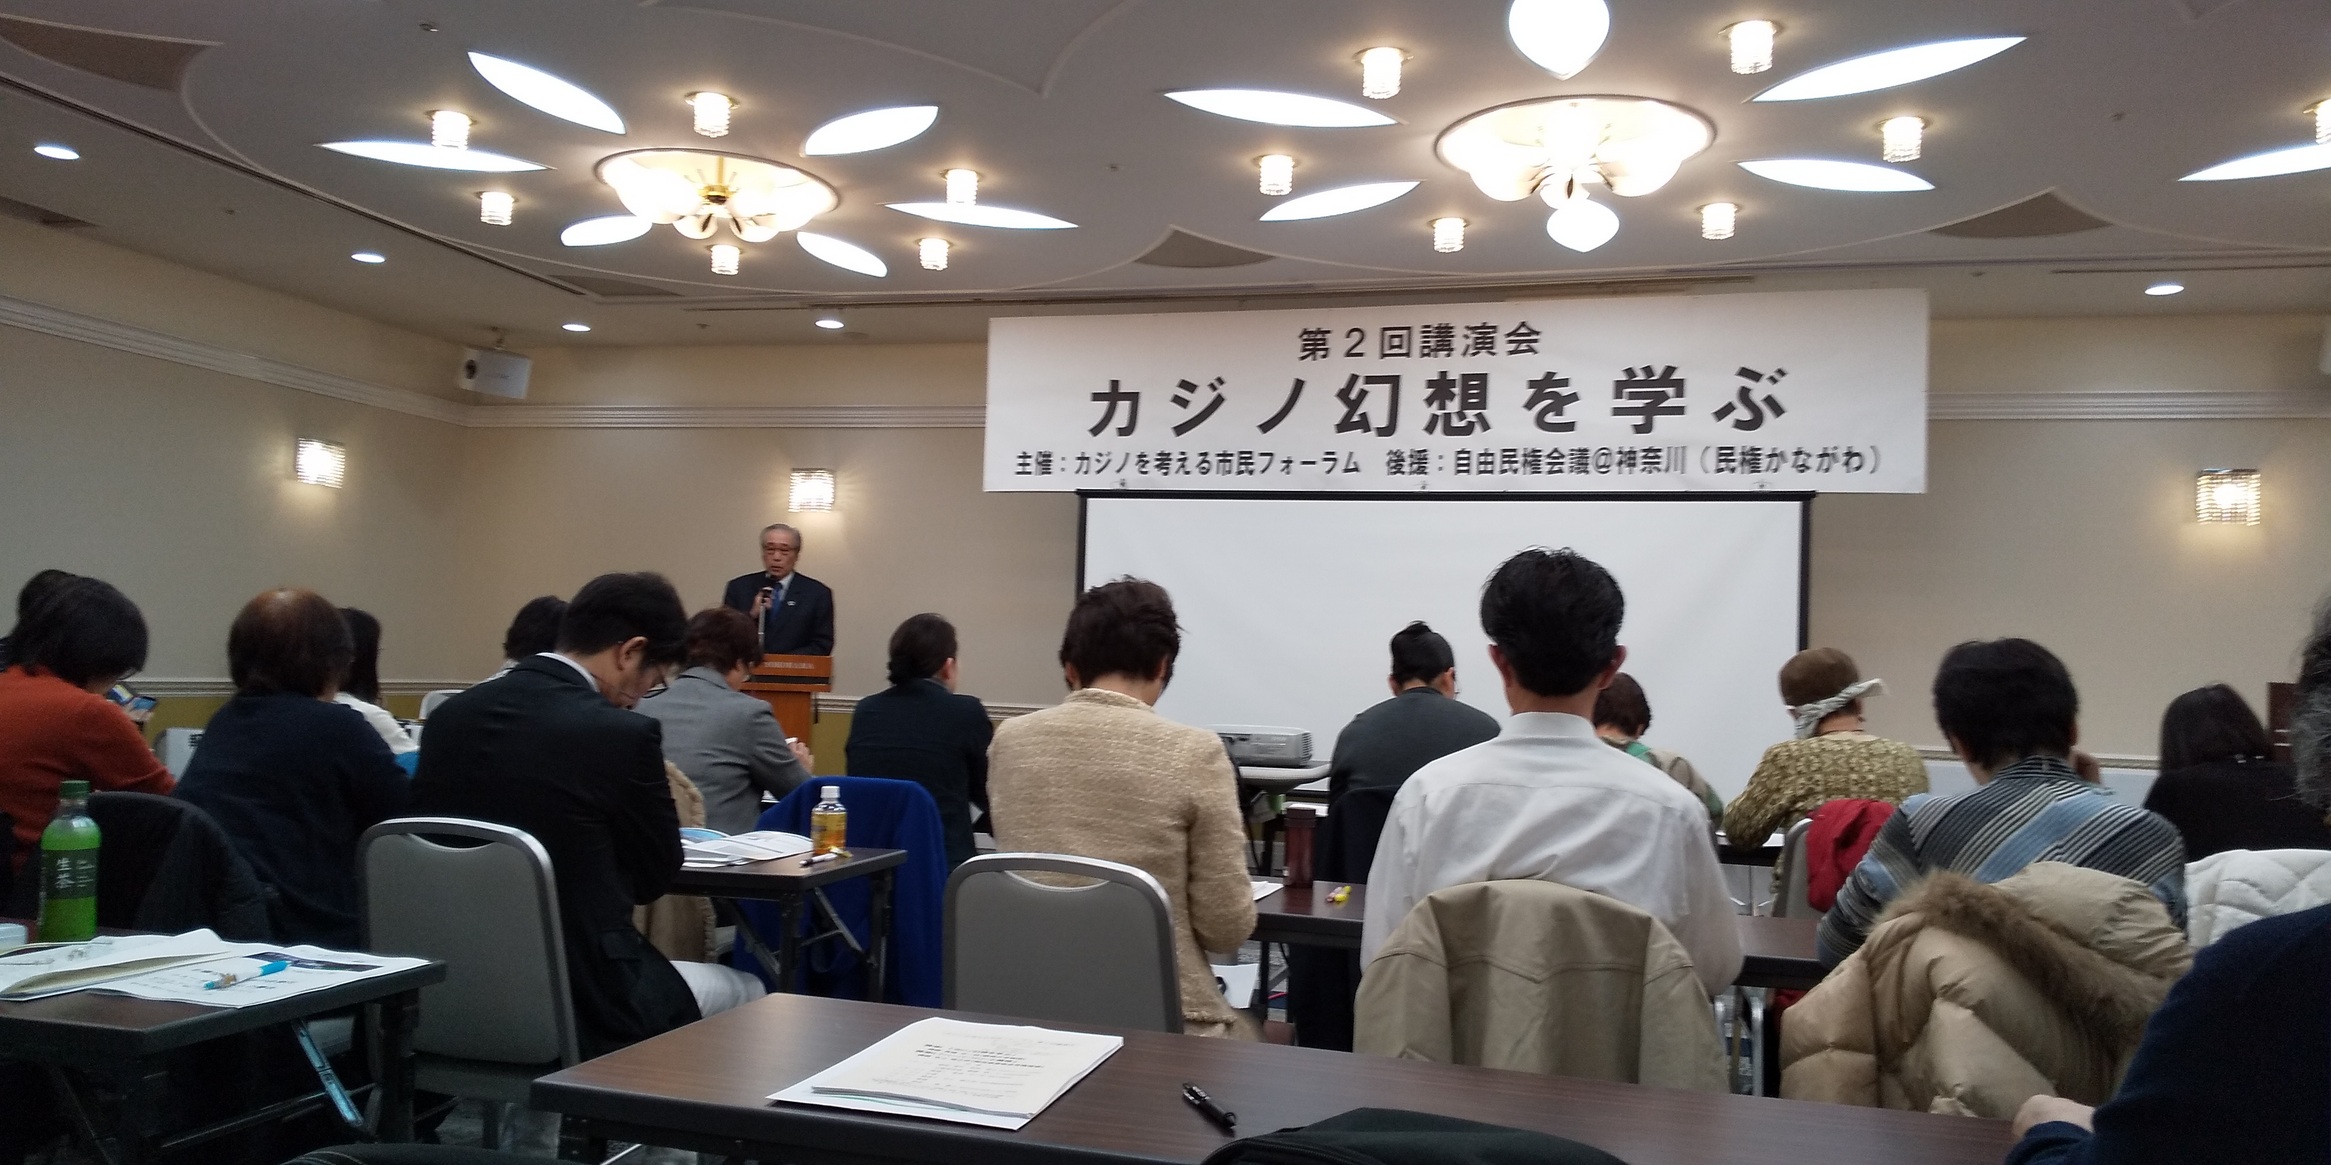 Irのリスクを学び反対する 神奈川ネットワーク運動 鎌倉